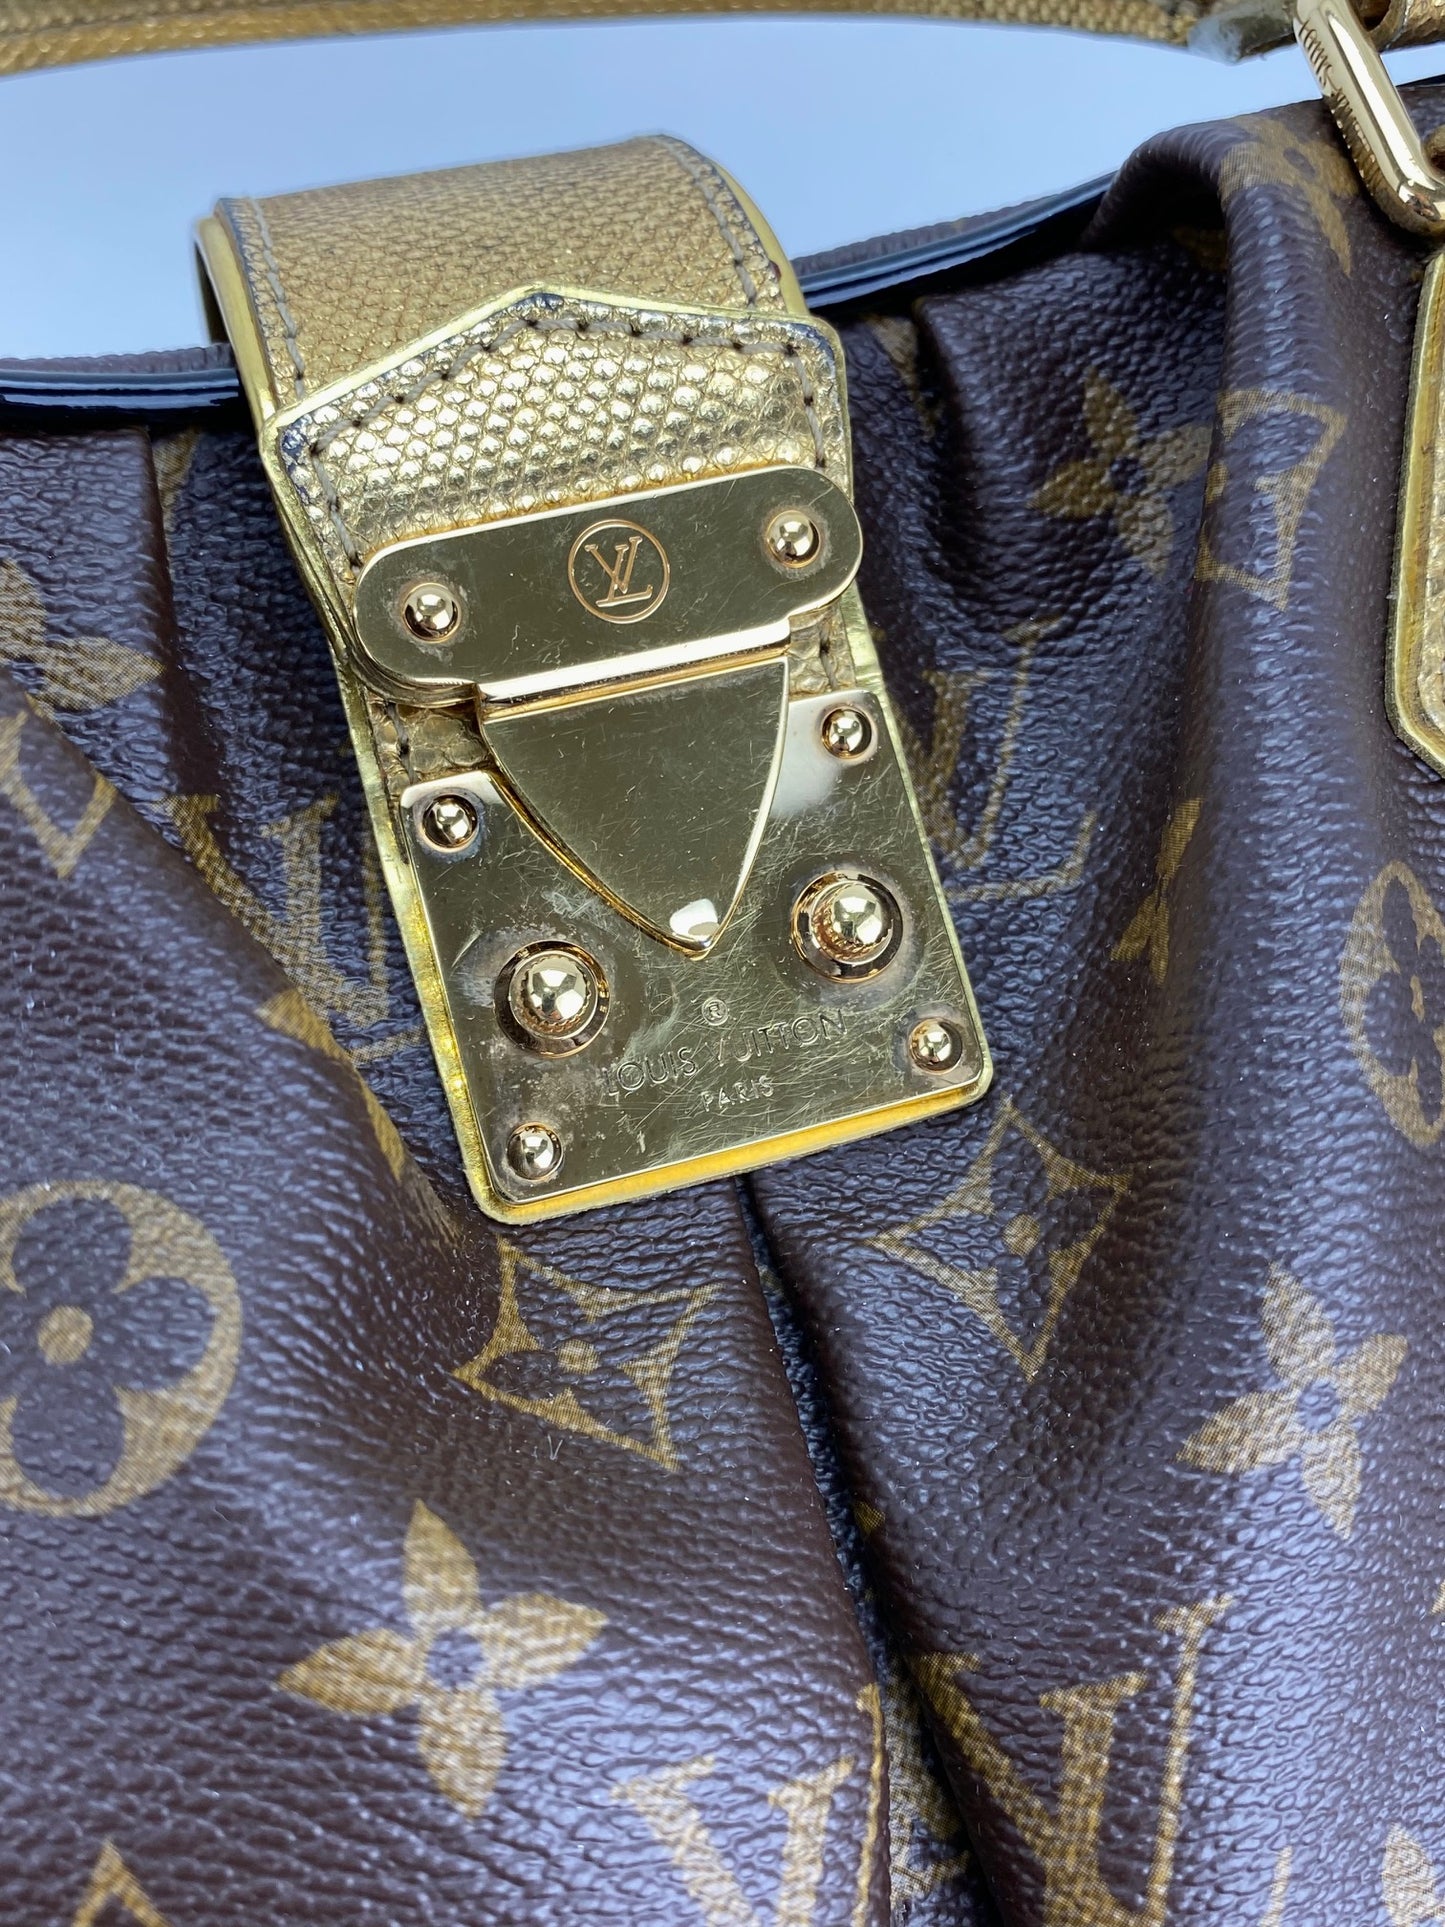 LOUIS VUITTON Monogram Leopard Adele Hand Bag M95284 LV Auth 21019